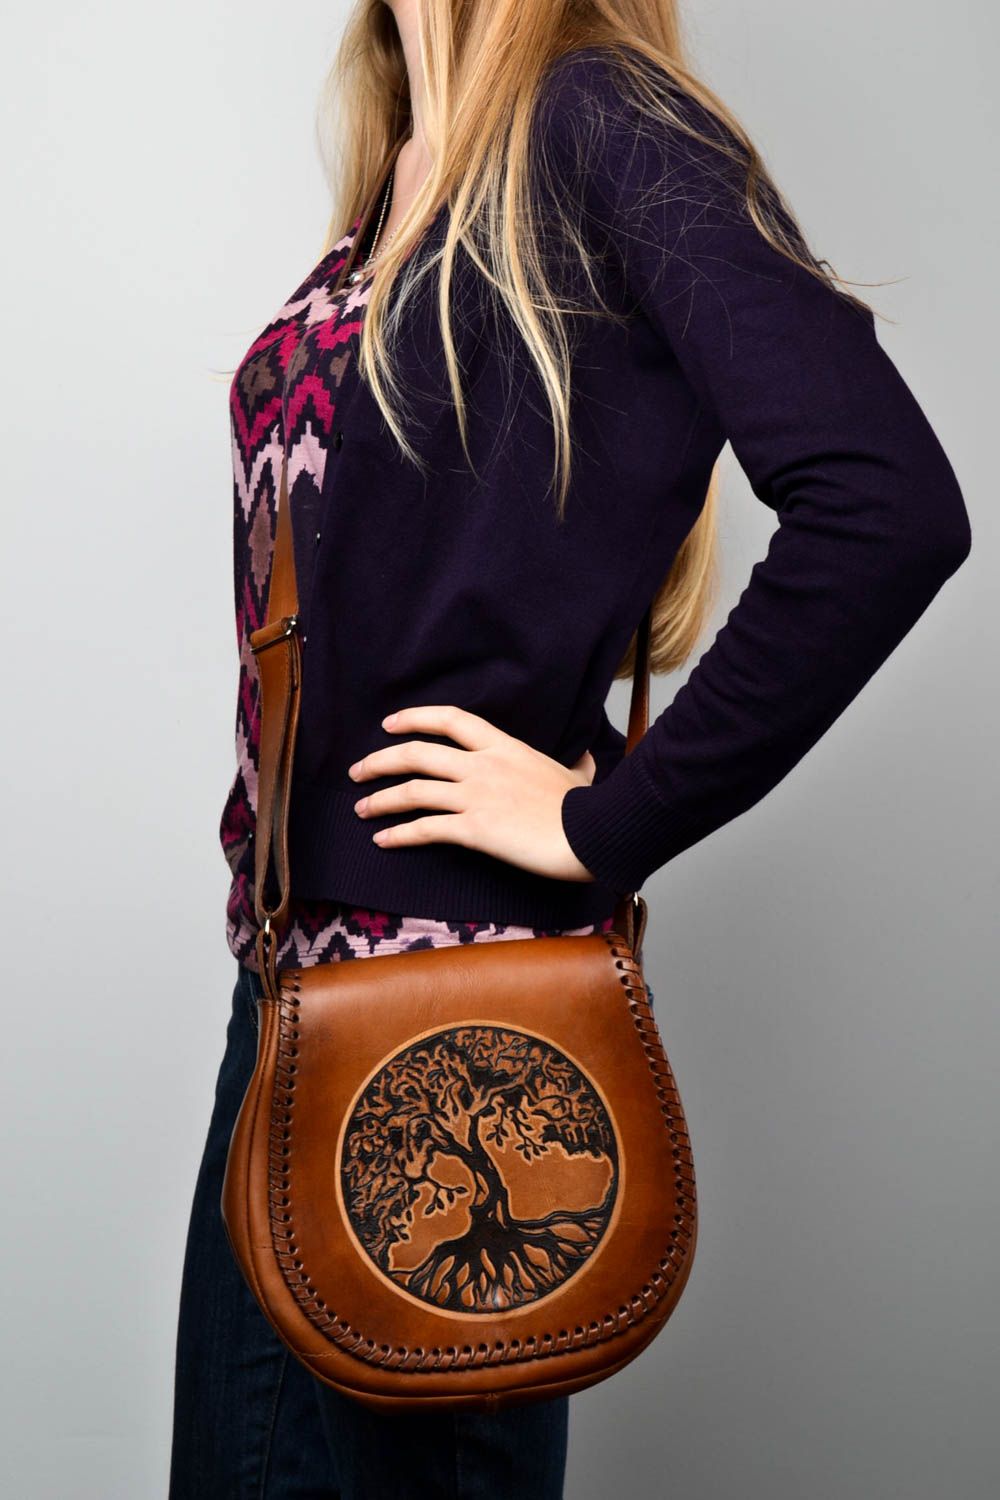 Сумка ручной работы кожаная сумка через плечо модная стильная женская сумка фото 1